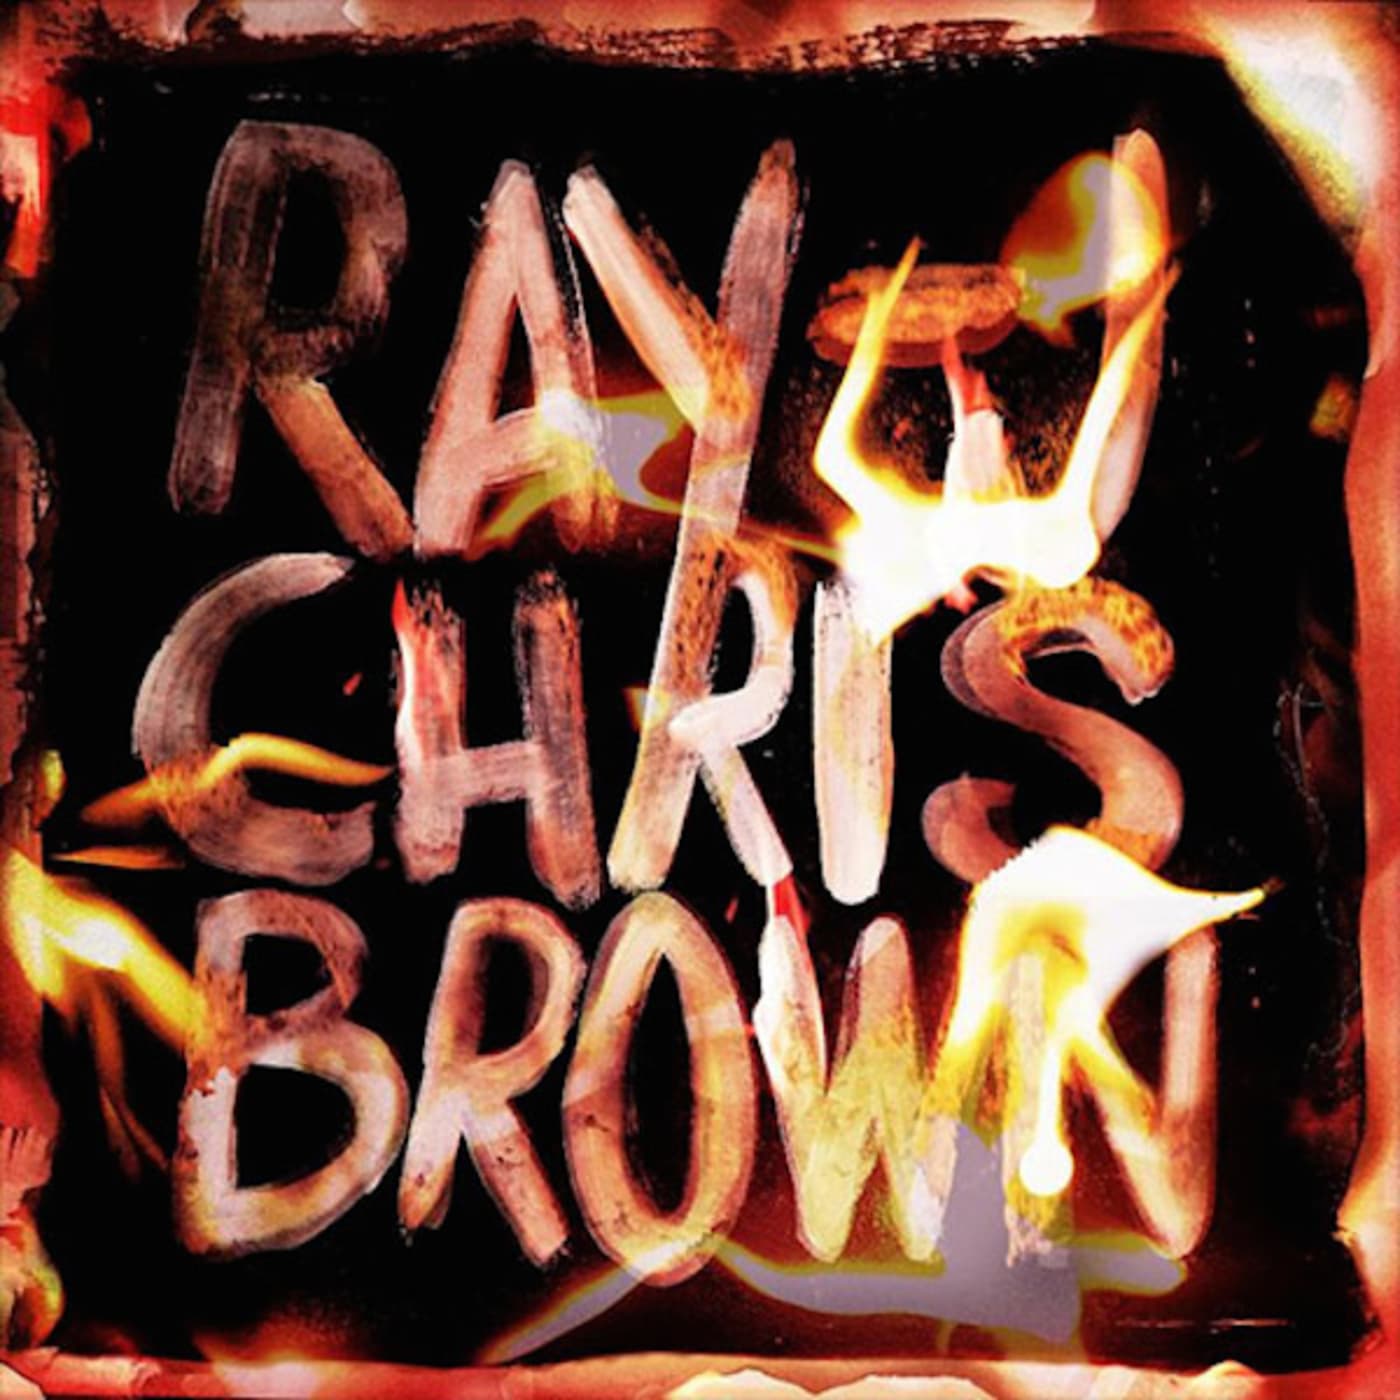 Chris Brown and Ray J "Burn My Name"